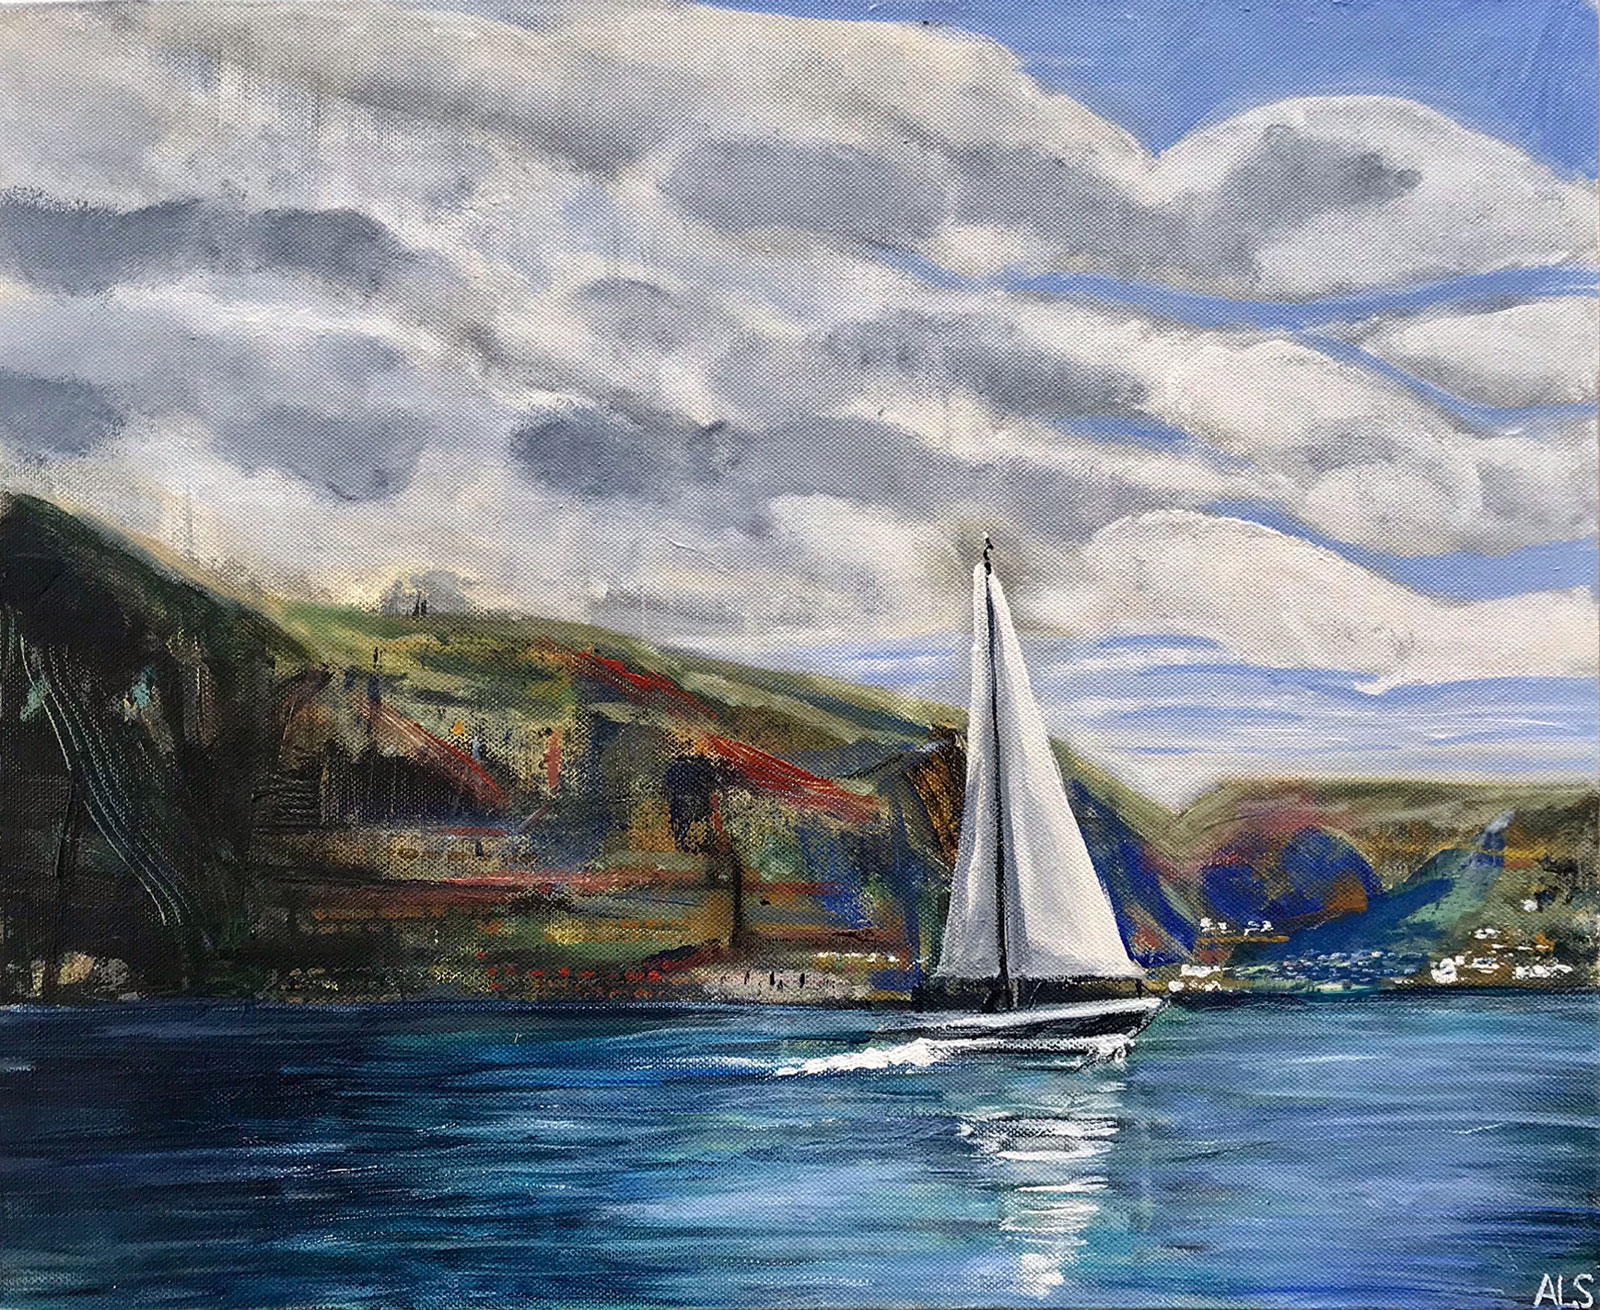 Set Sail,Amanda Lyon-Smith,artist,teignmouth,devon